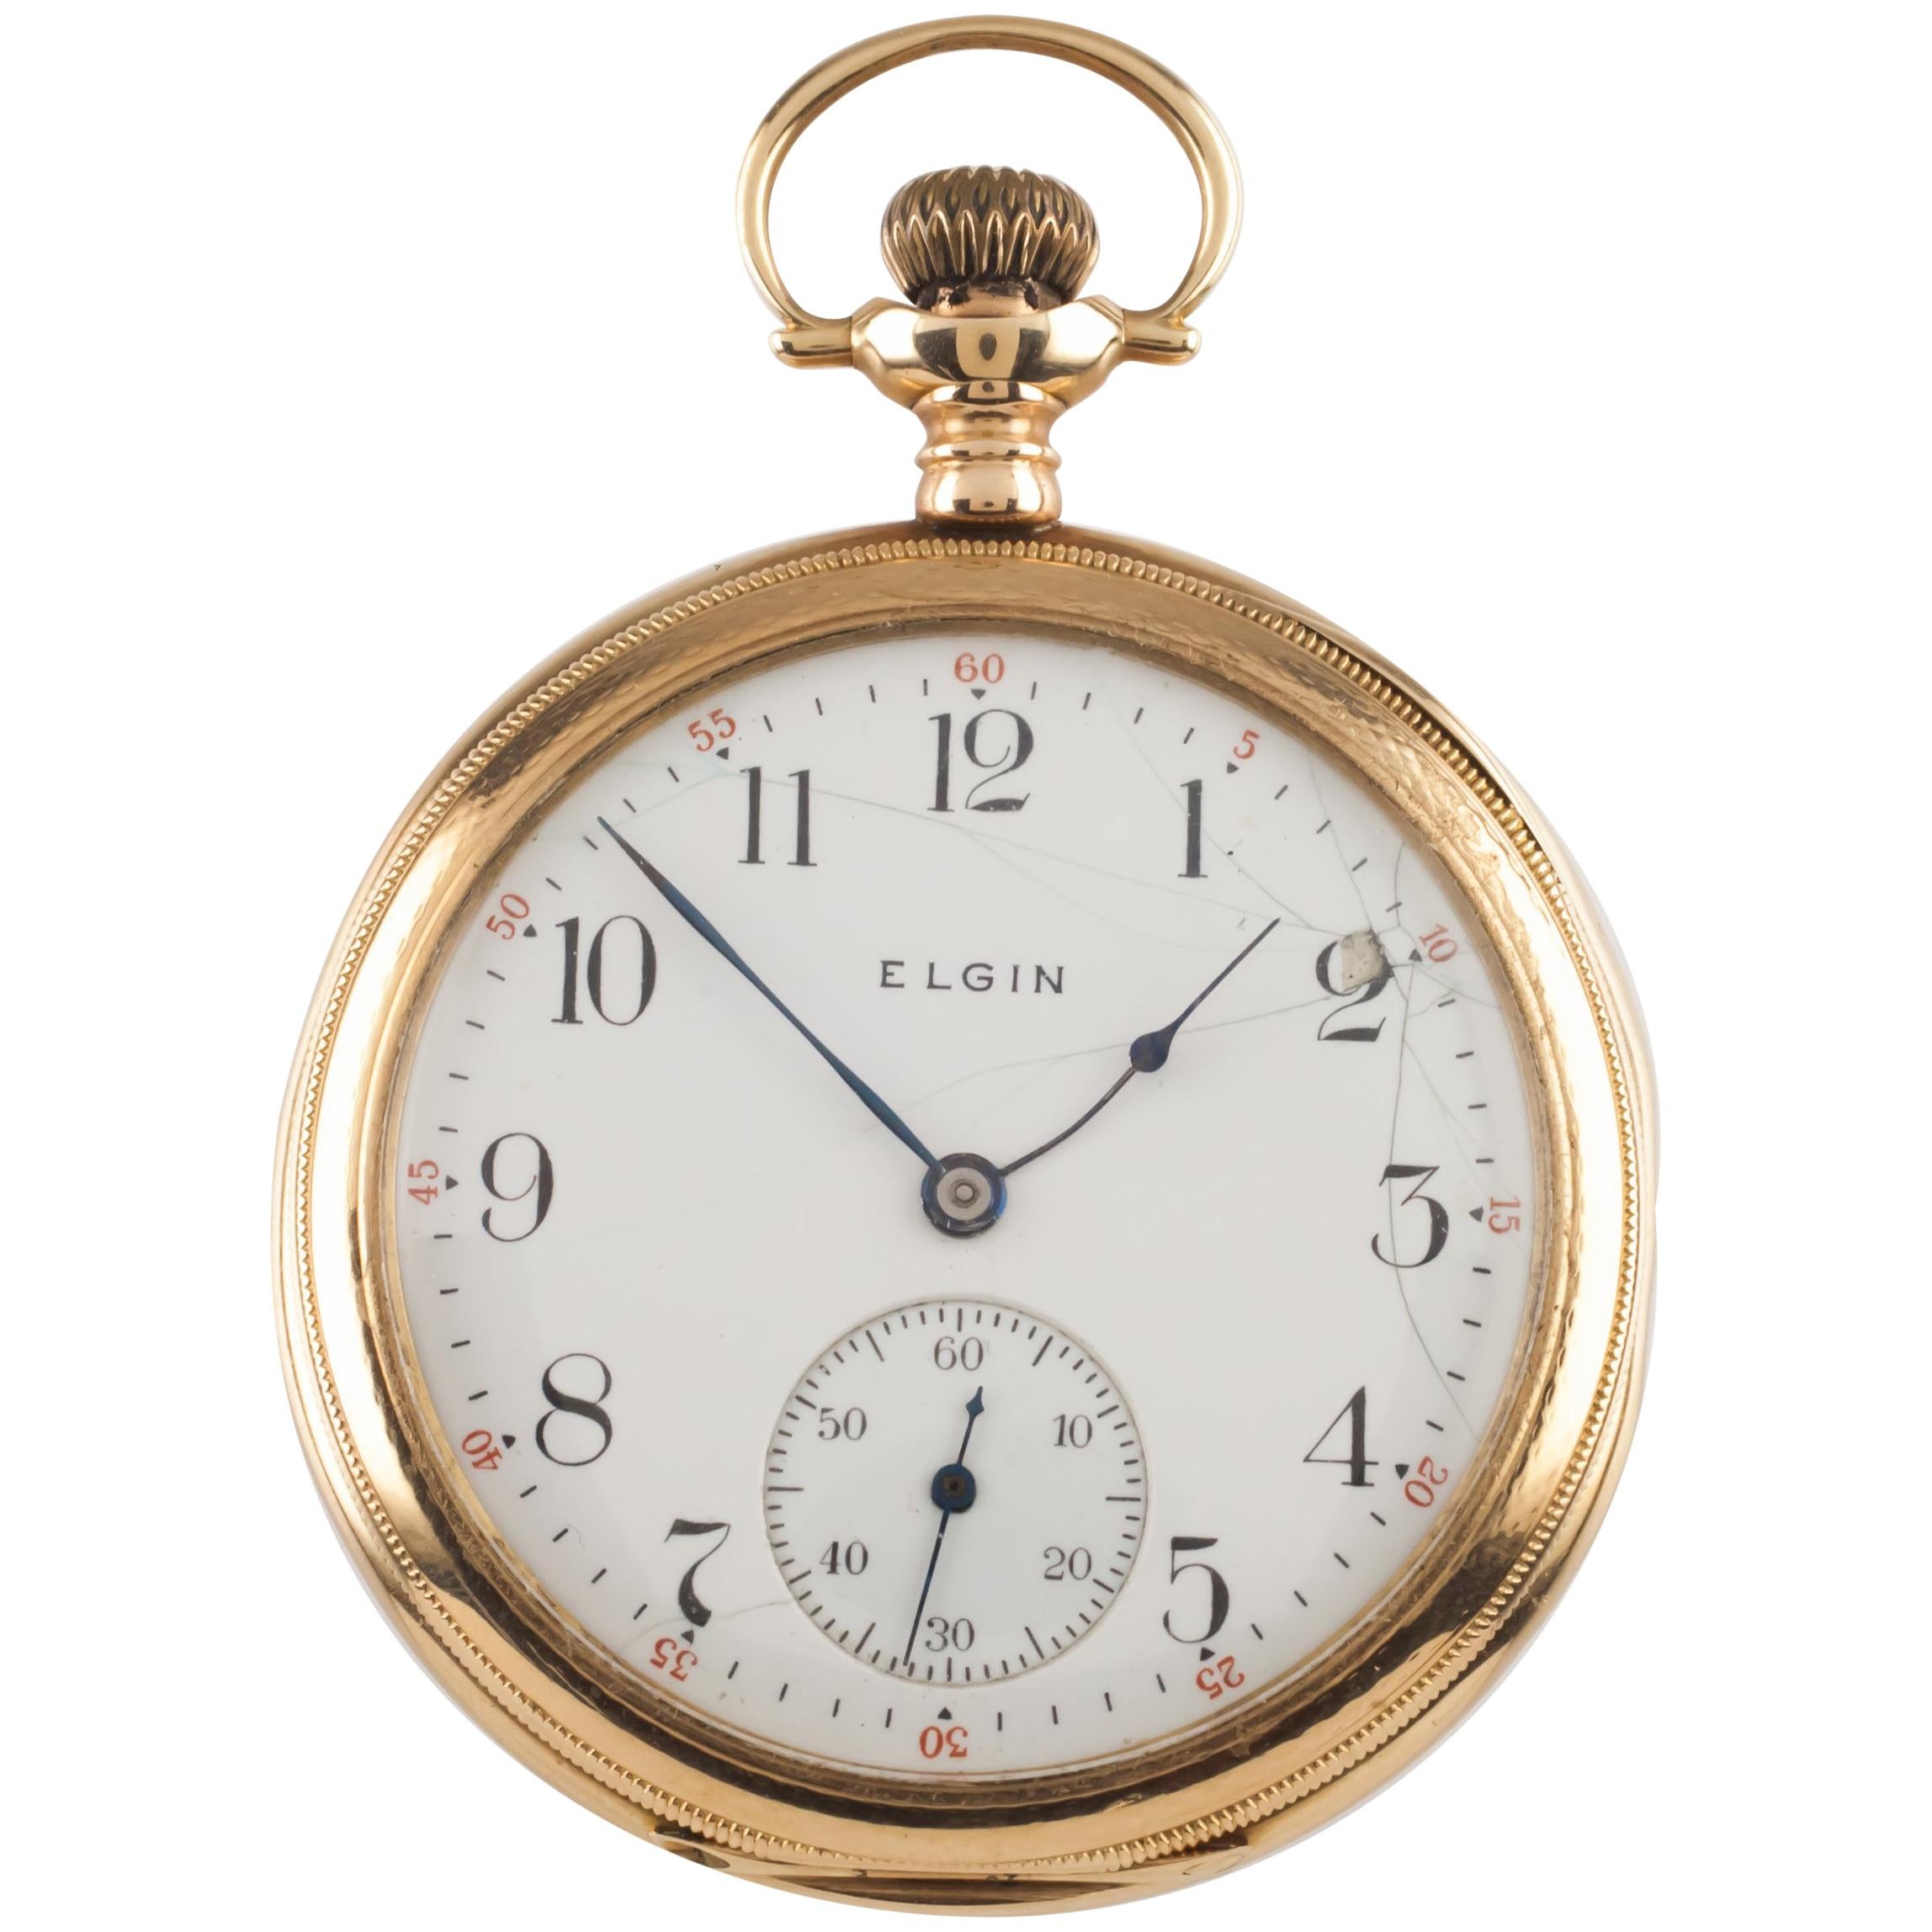 Elgin Open-Face 14 Karat Gold Antique Pocket Watch Gr 364 12S 15J 1910 For Sale